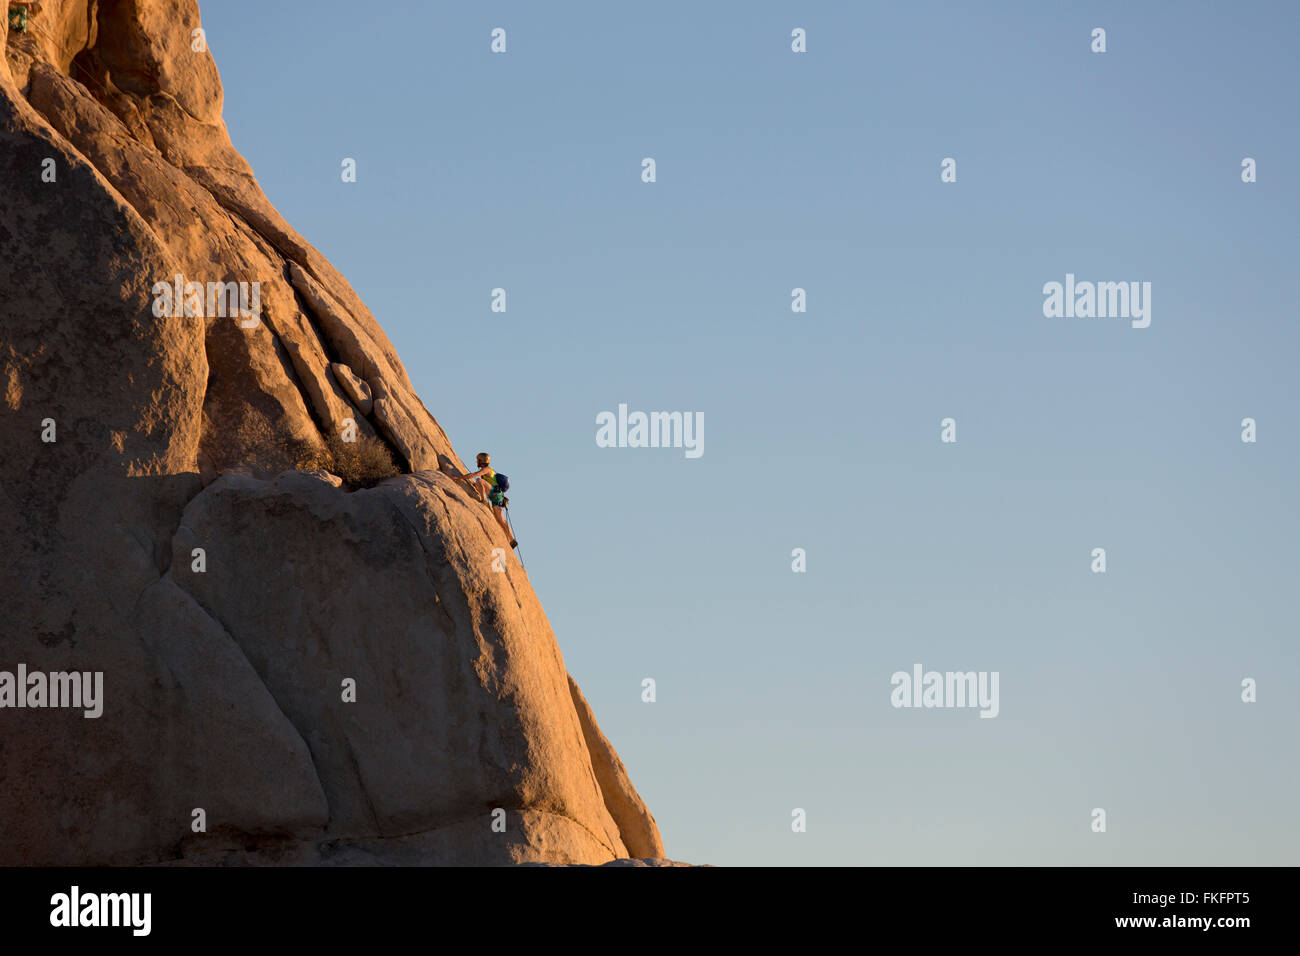 Person rock climbing, Hidden Valley, Joshua Tree National Park, California, USA Stock Photo